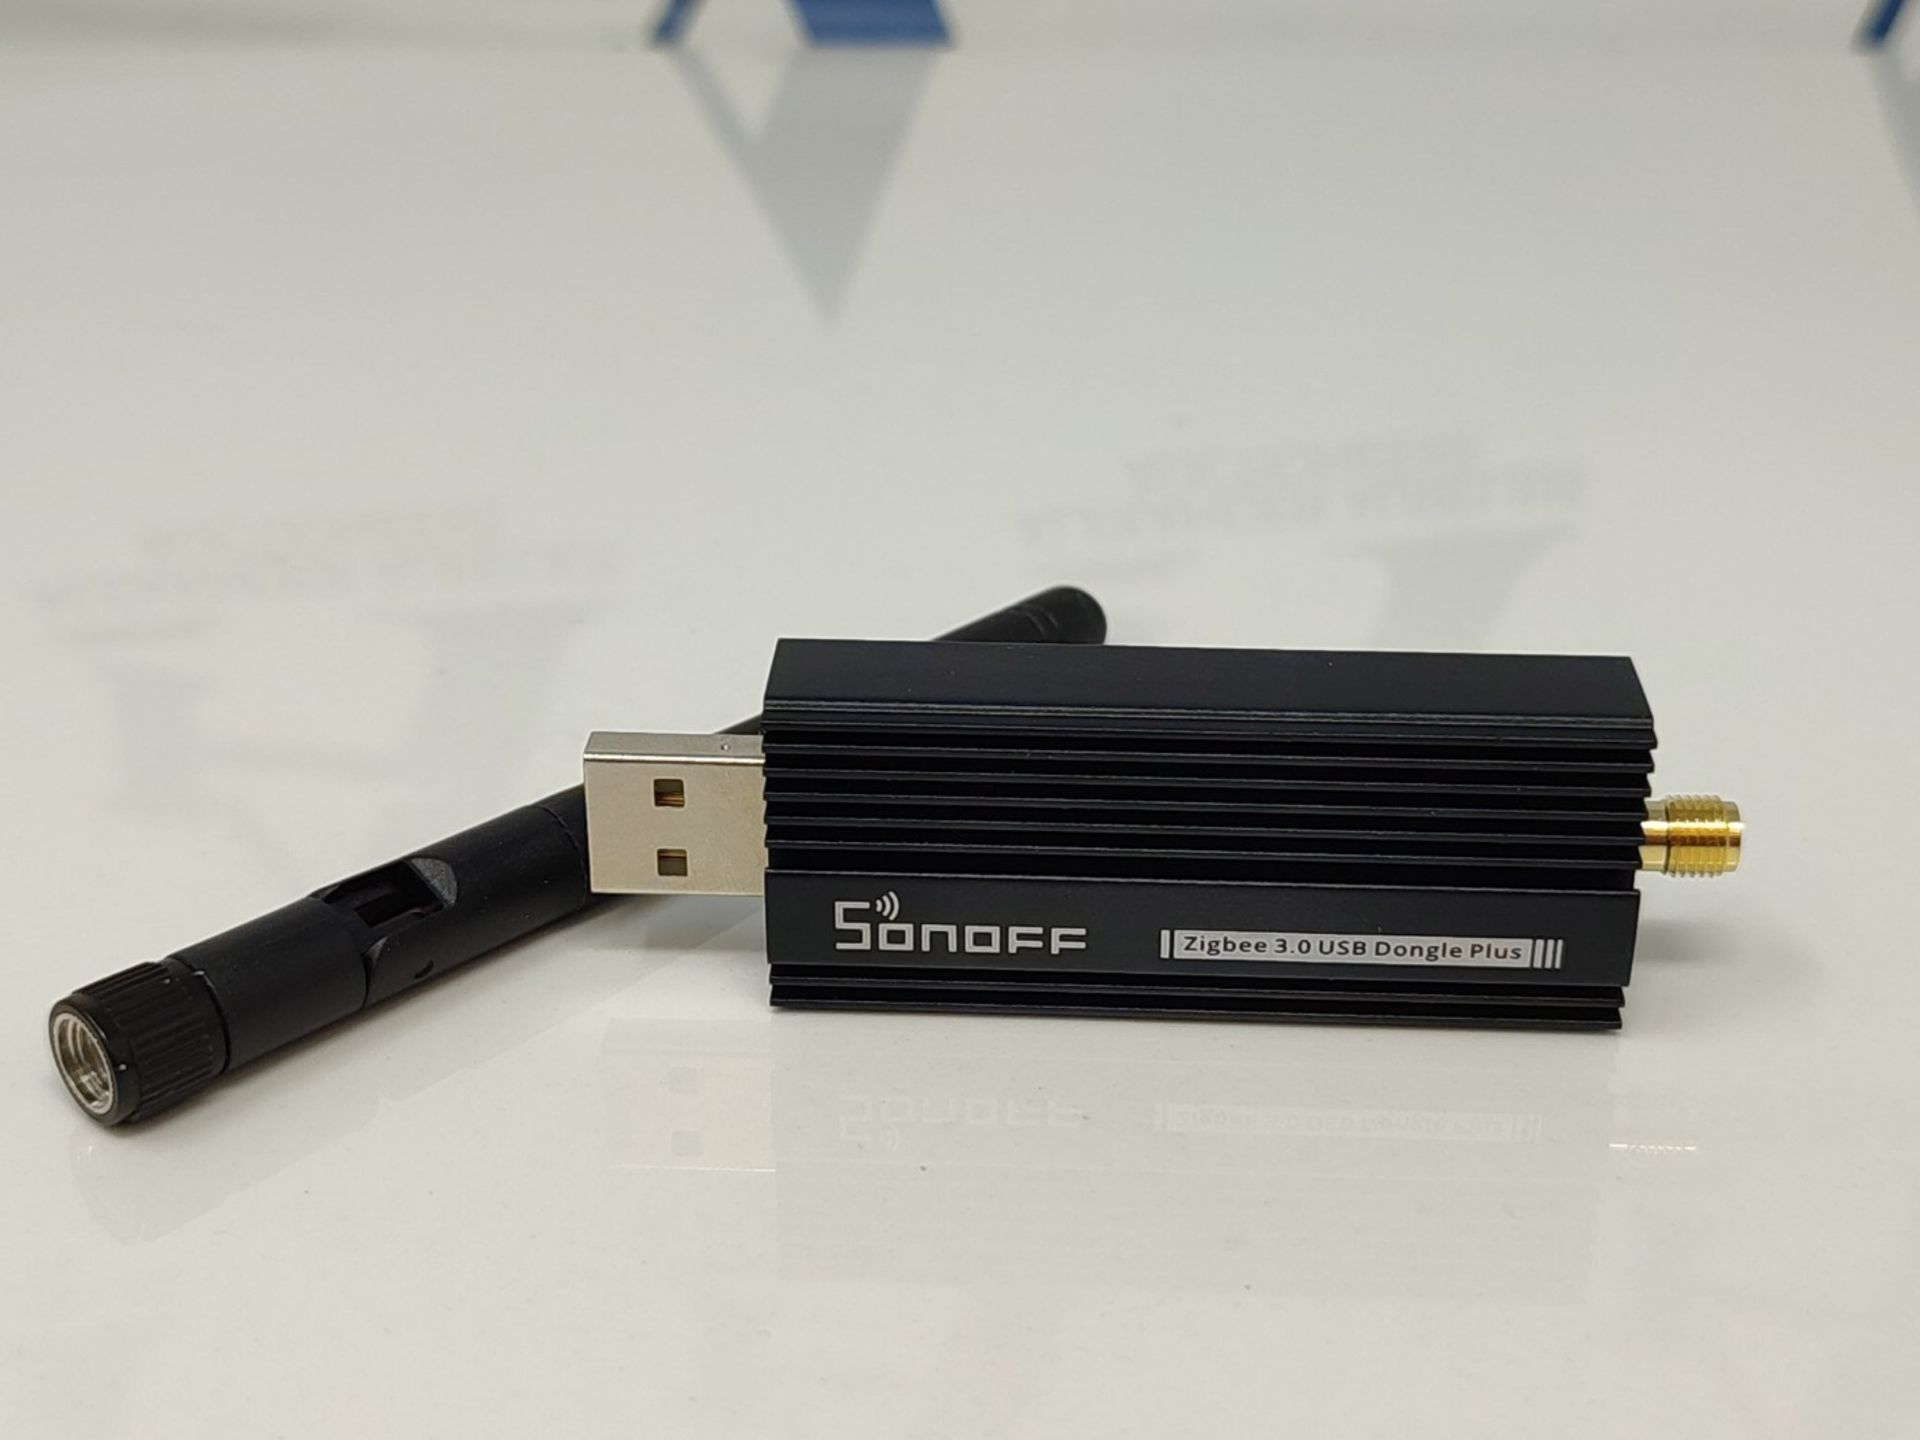 Zigbee Gateway, ZBDongle-E USB Zigbee 3.0 USB Dongle Plus, EFR32MG21 + CH9102F Zigbee - Image 2 of 2